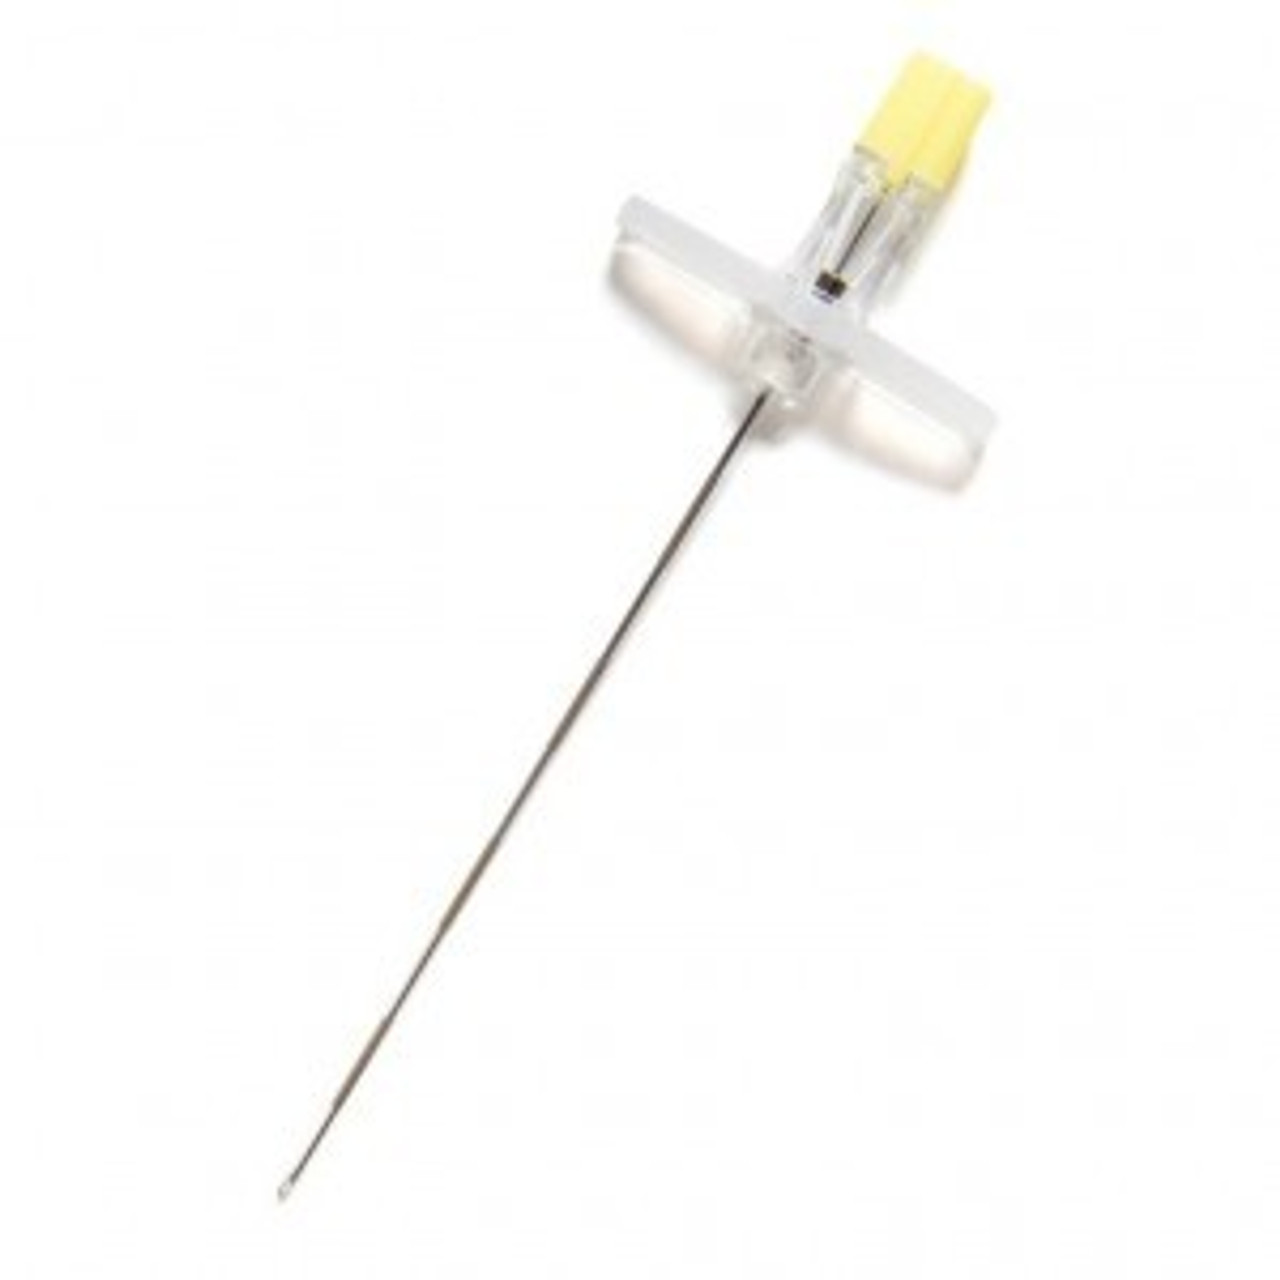 Avanos Tuohy Epidural Needle, 20G x 4 1/2", Plastic Hub, 25/bx